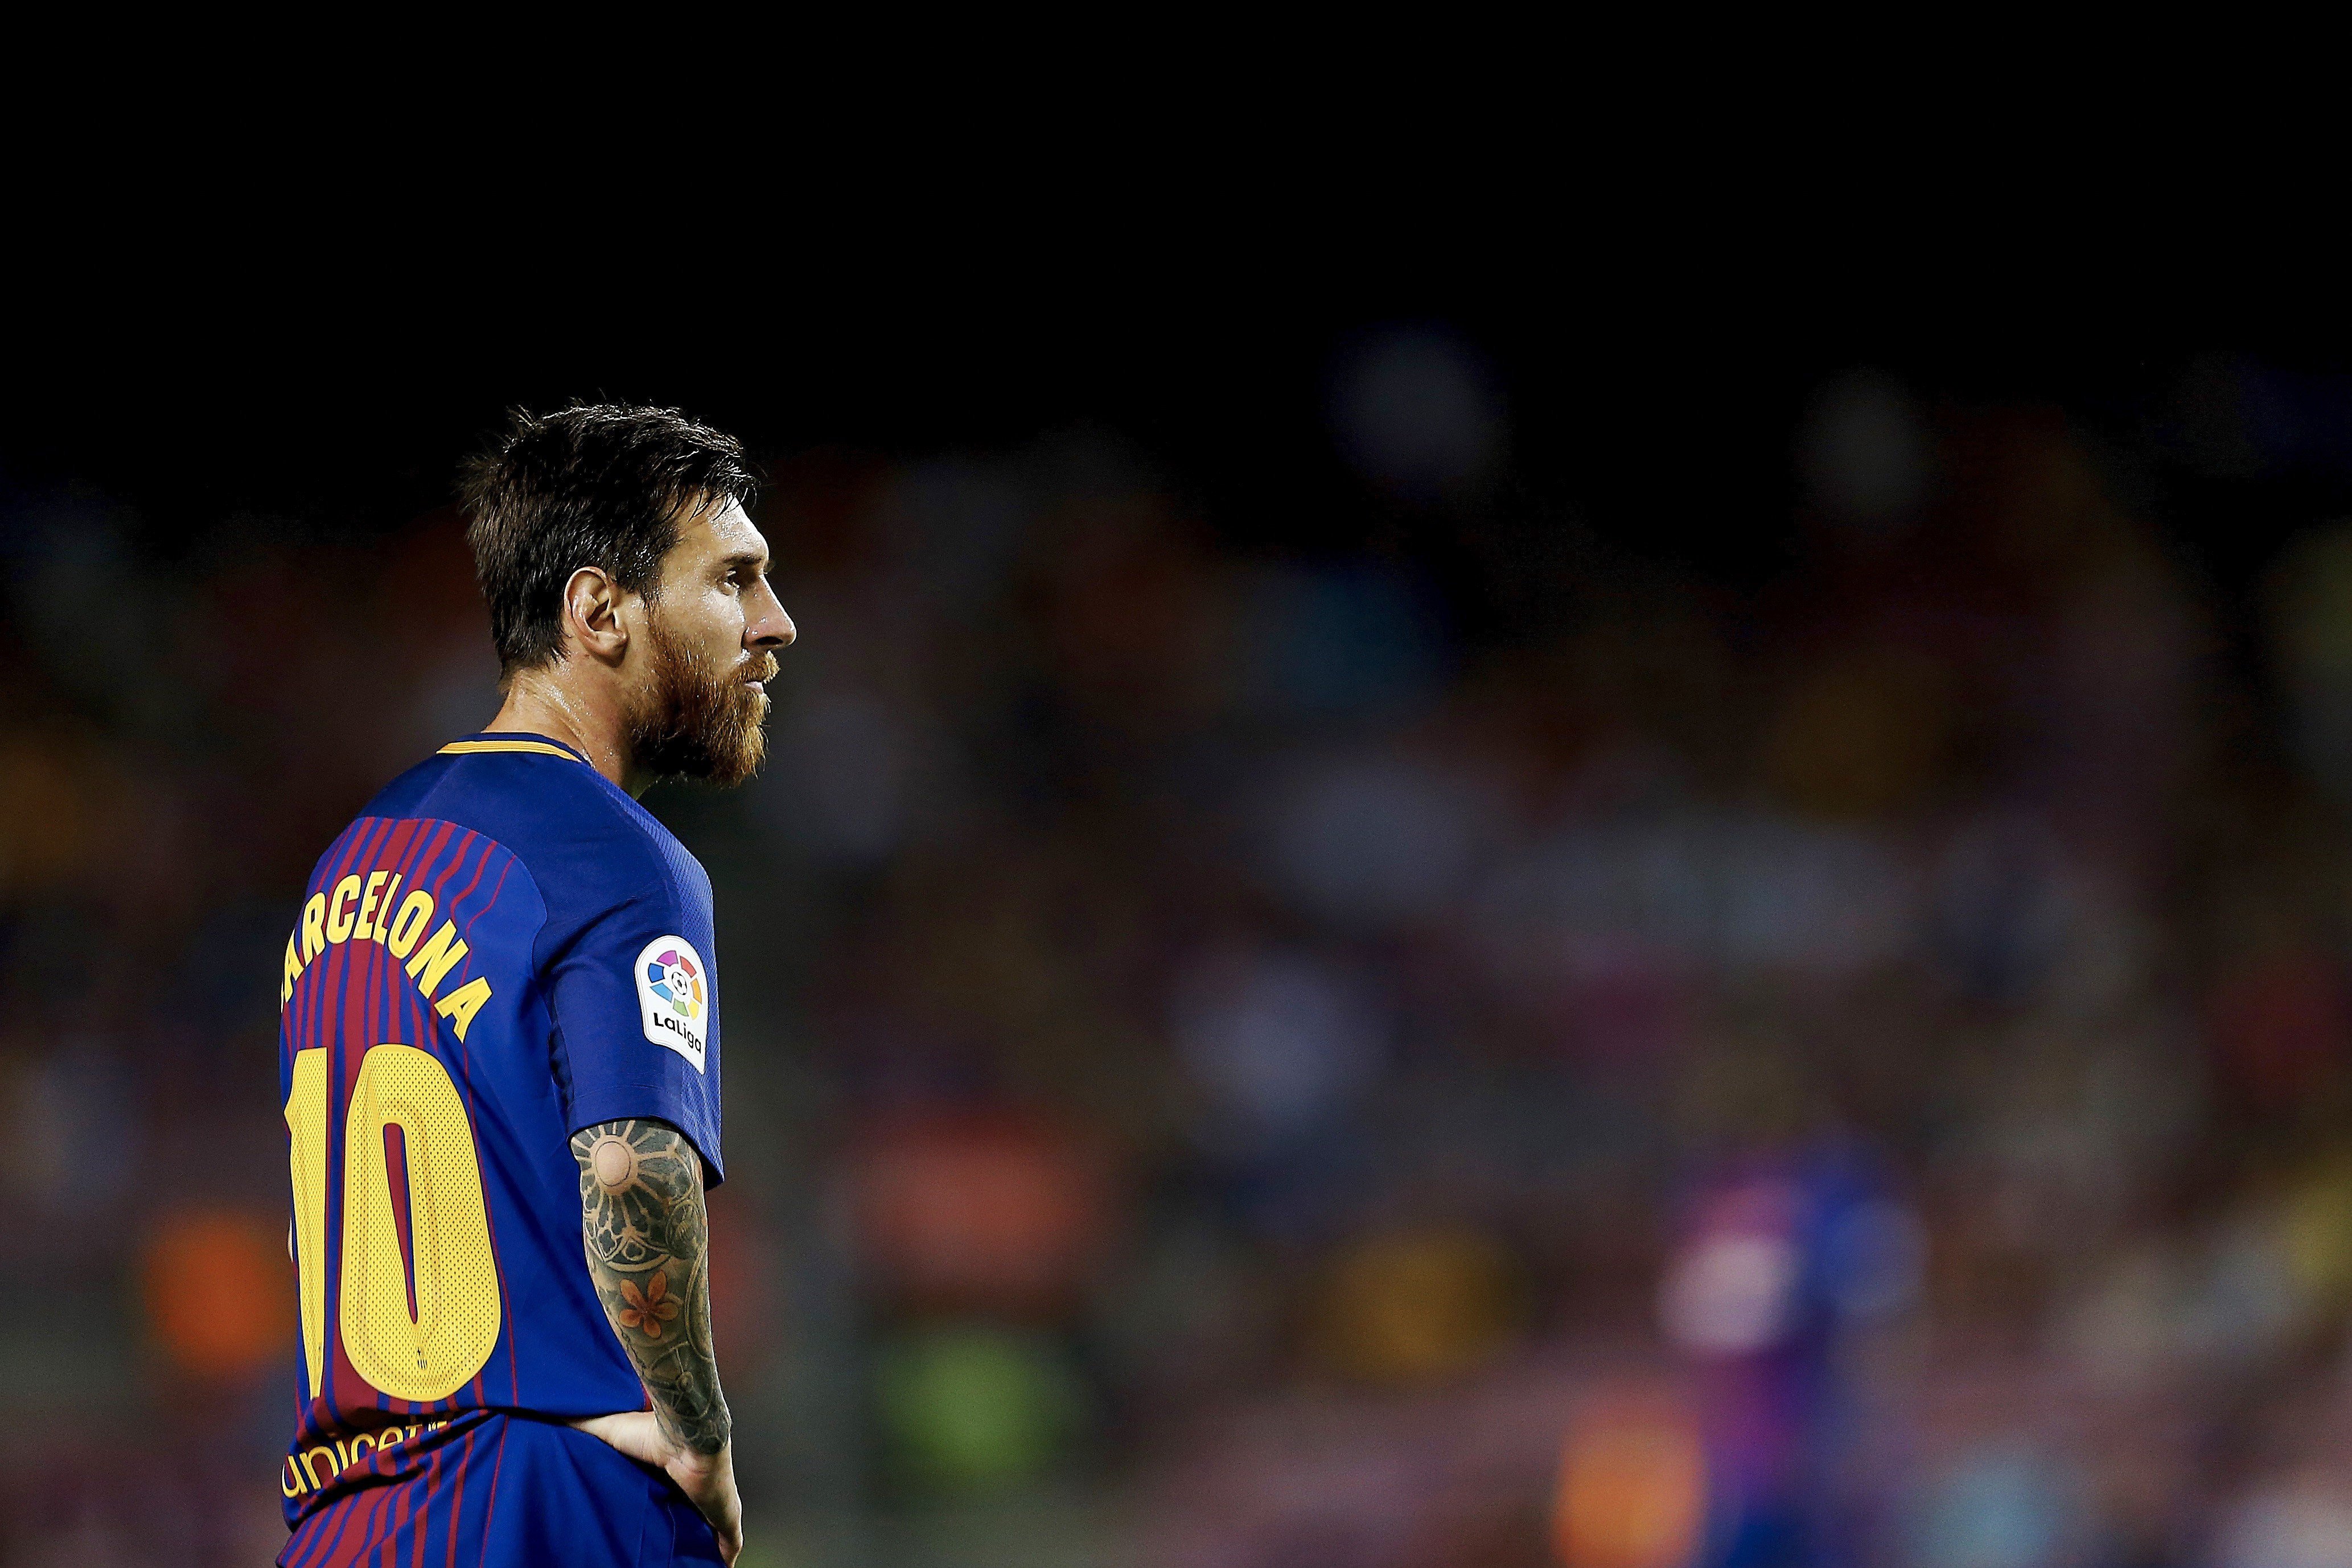 Investiguen Messi per "operacions sospitoses" dels papers de Panamà